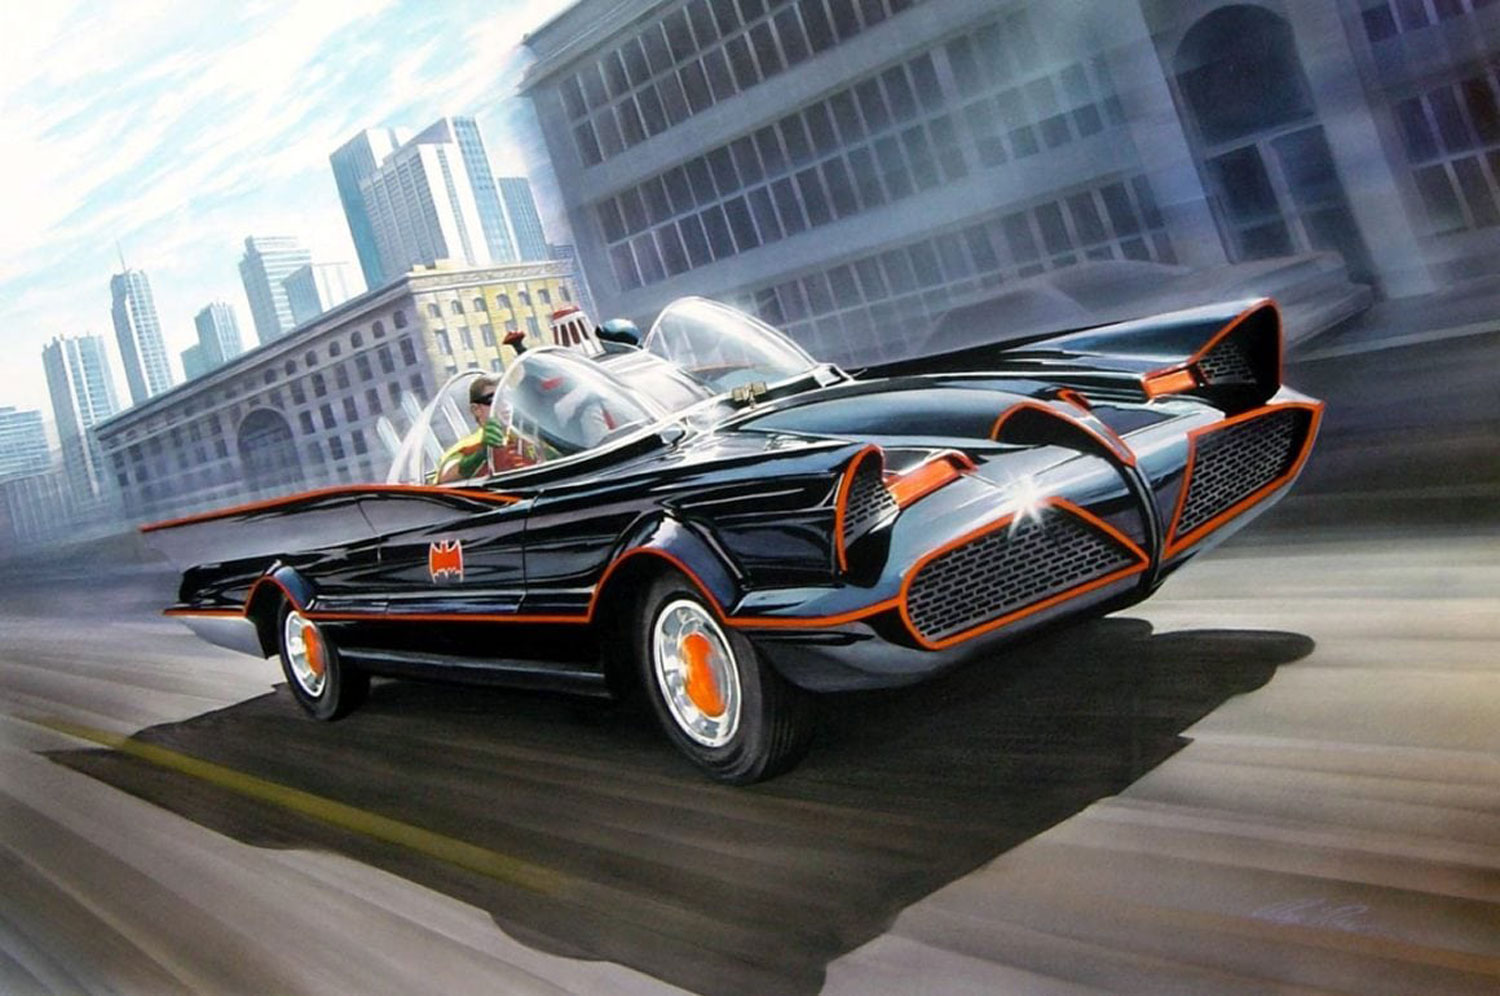 The Lincoln Futura, Part 2: The Batmobile